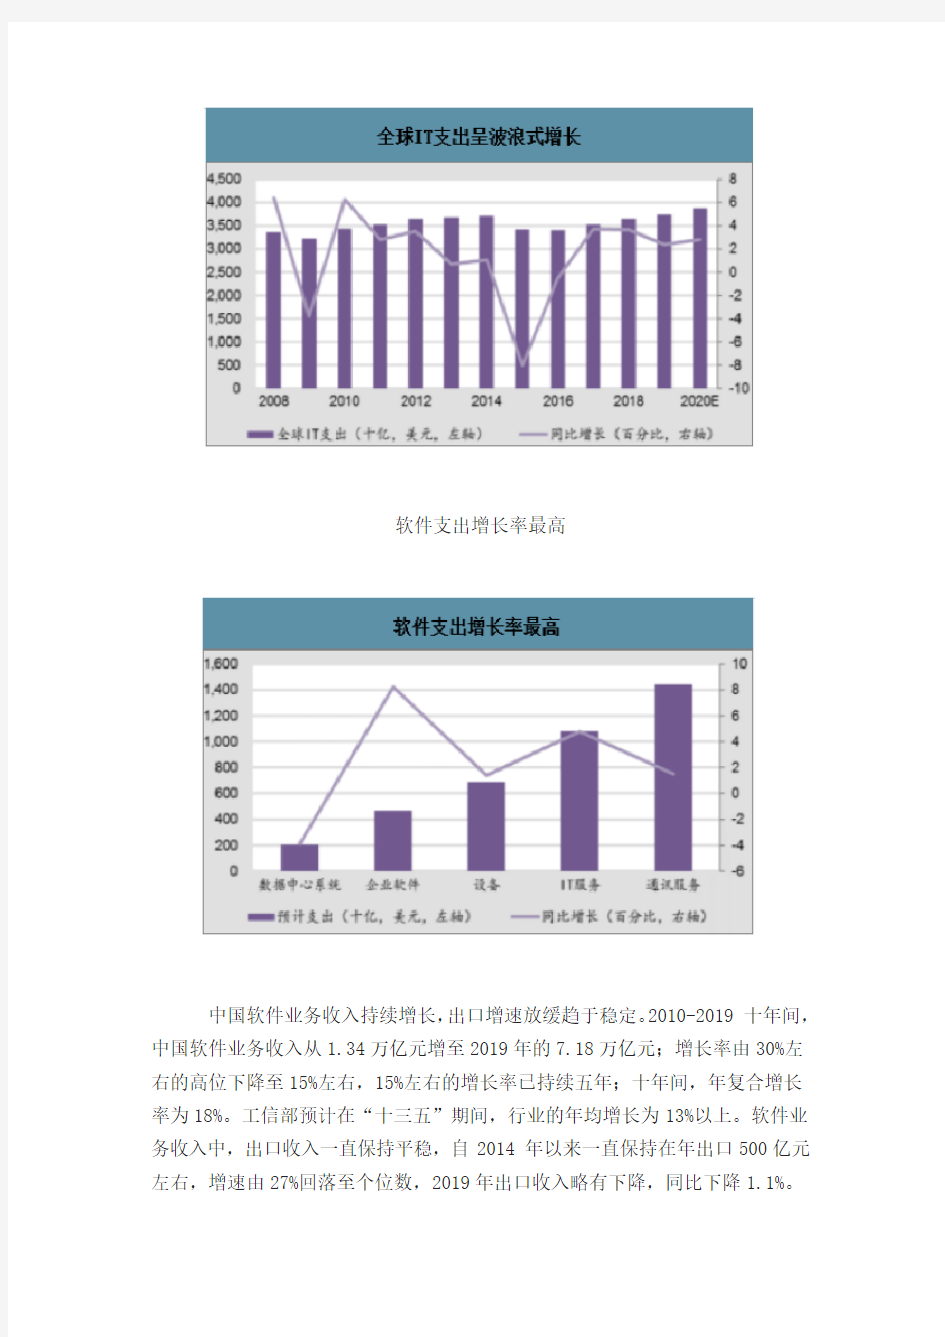 2019年中国操作系统行业发展趋势分析